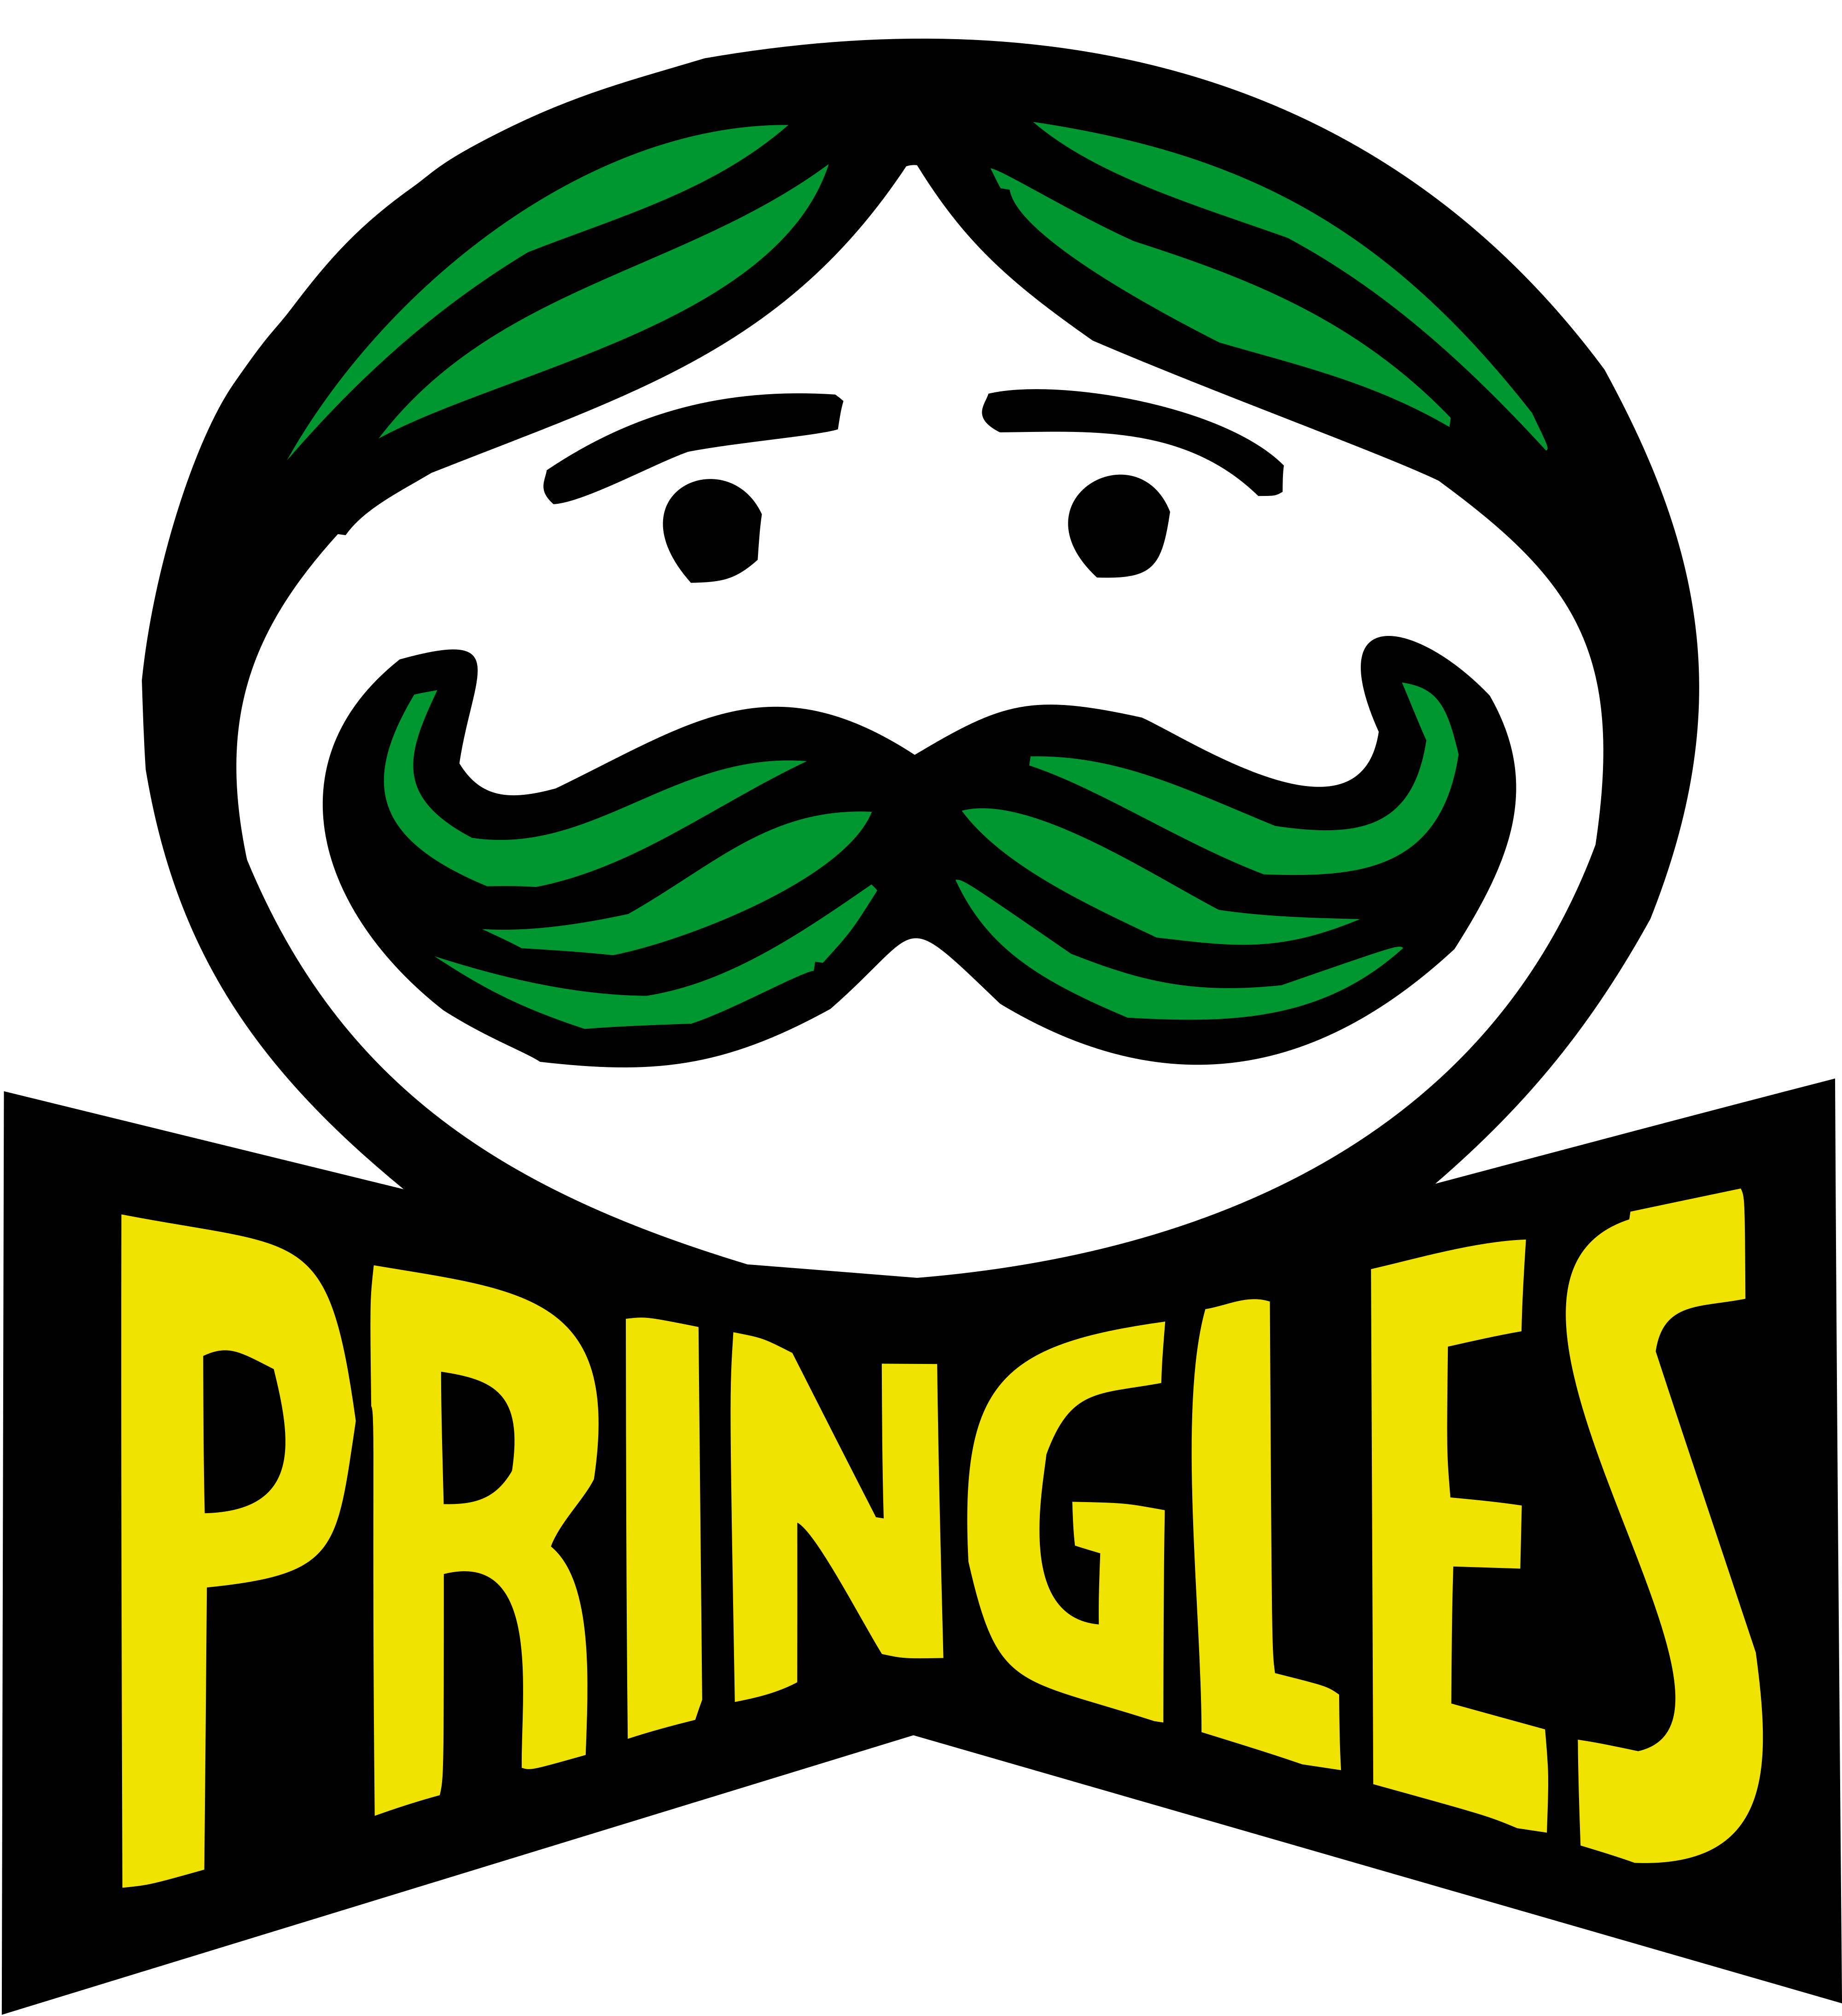 Pringles logo - download.